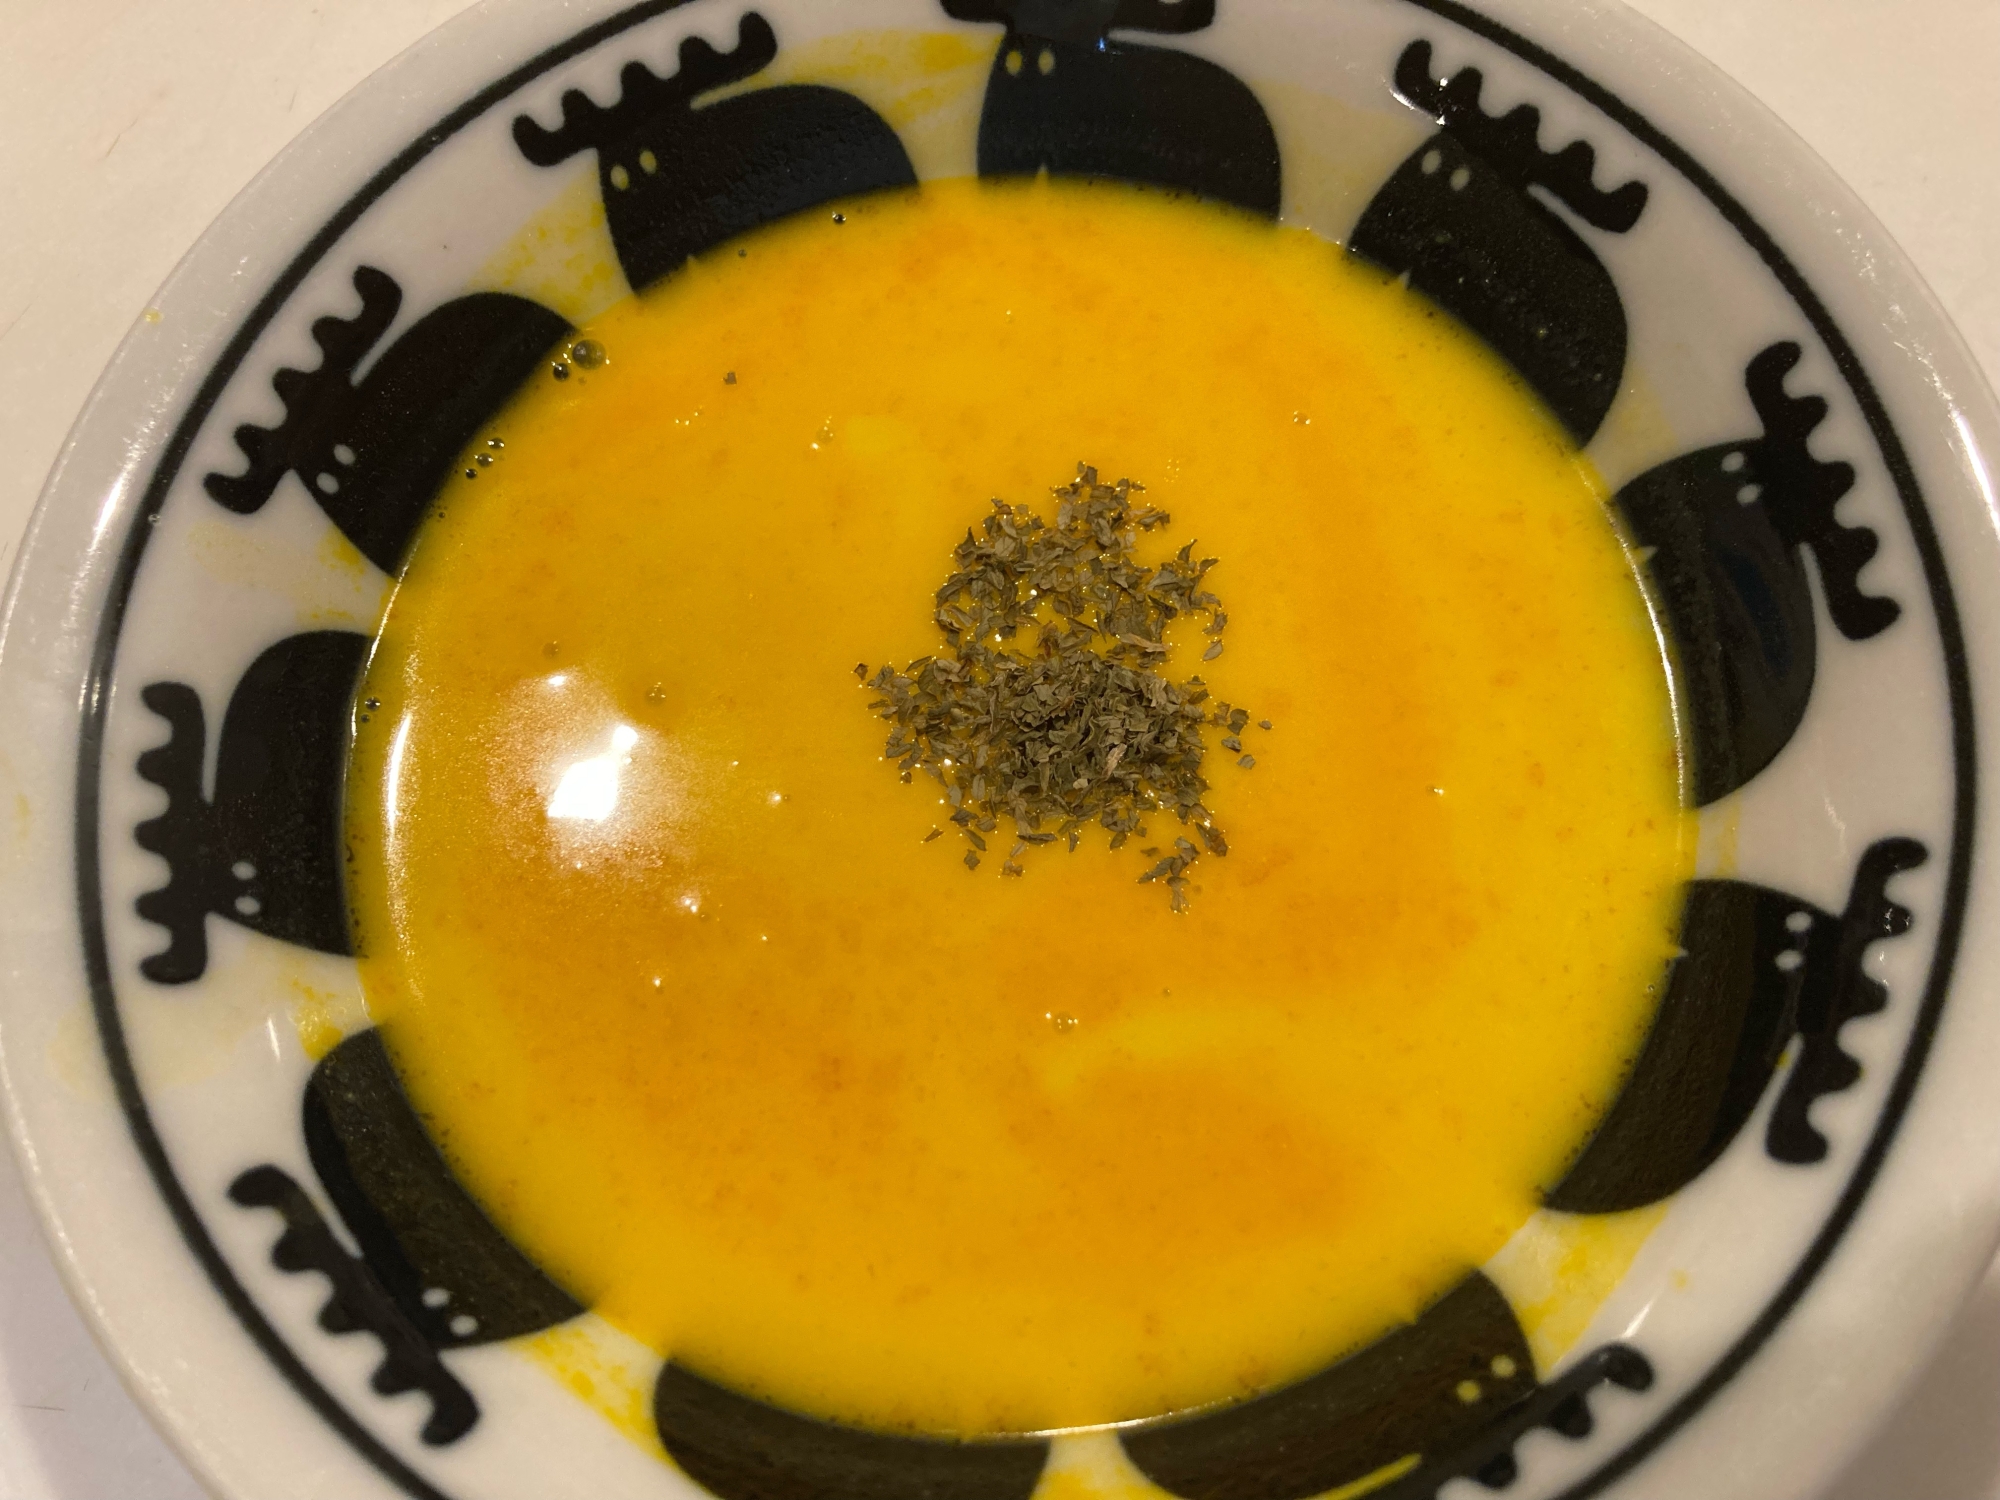 かぼちゃのスープ